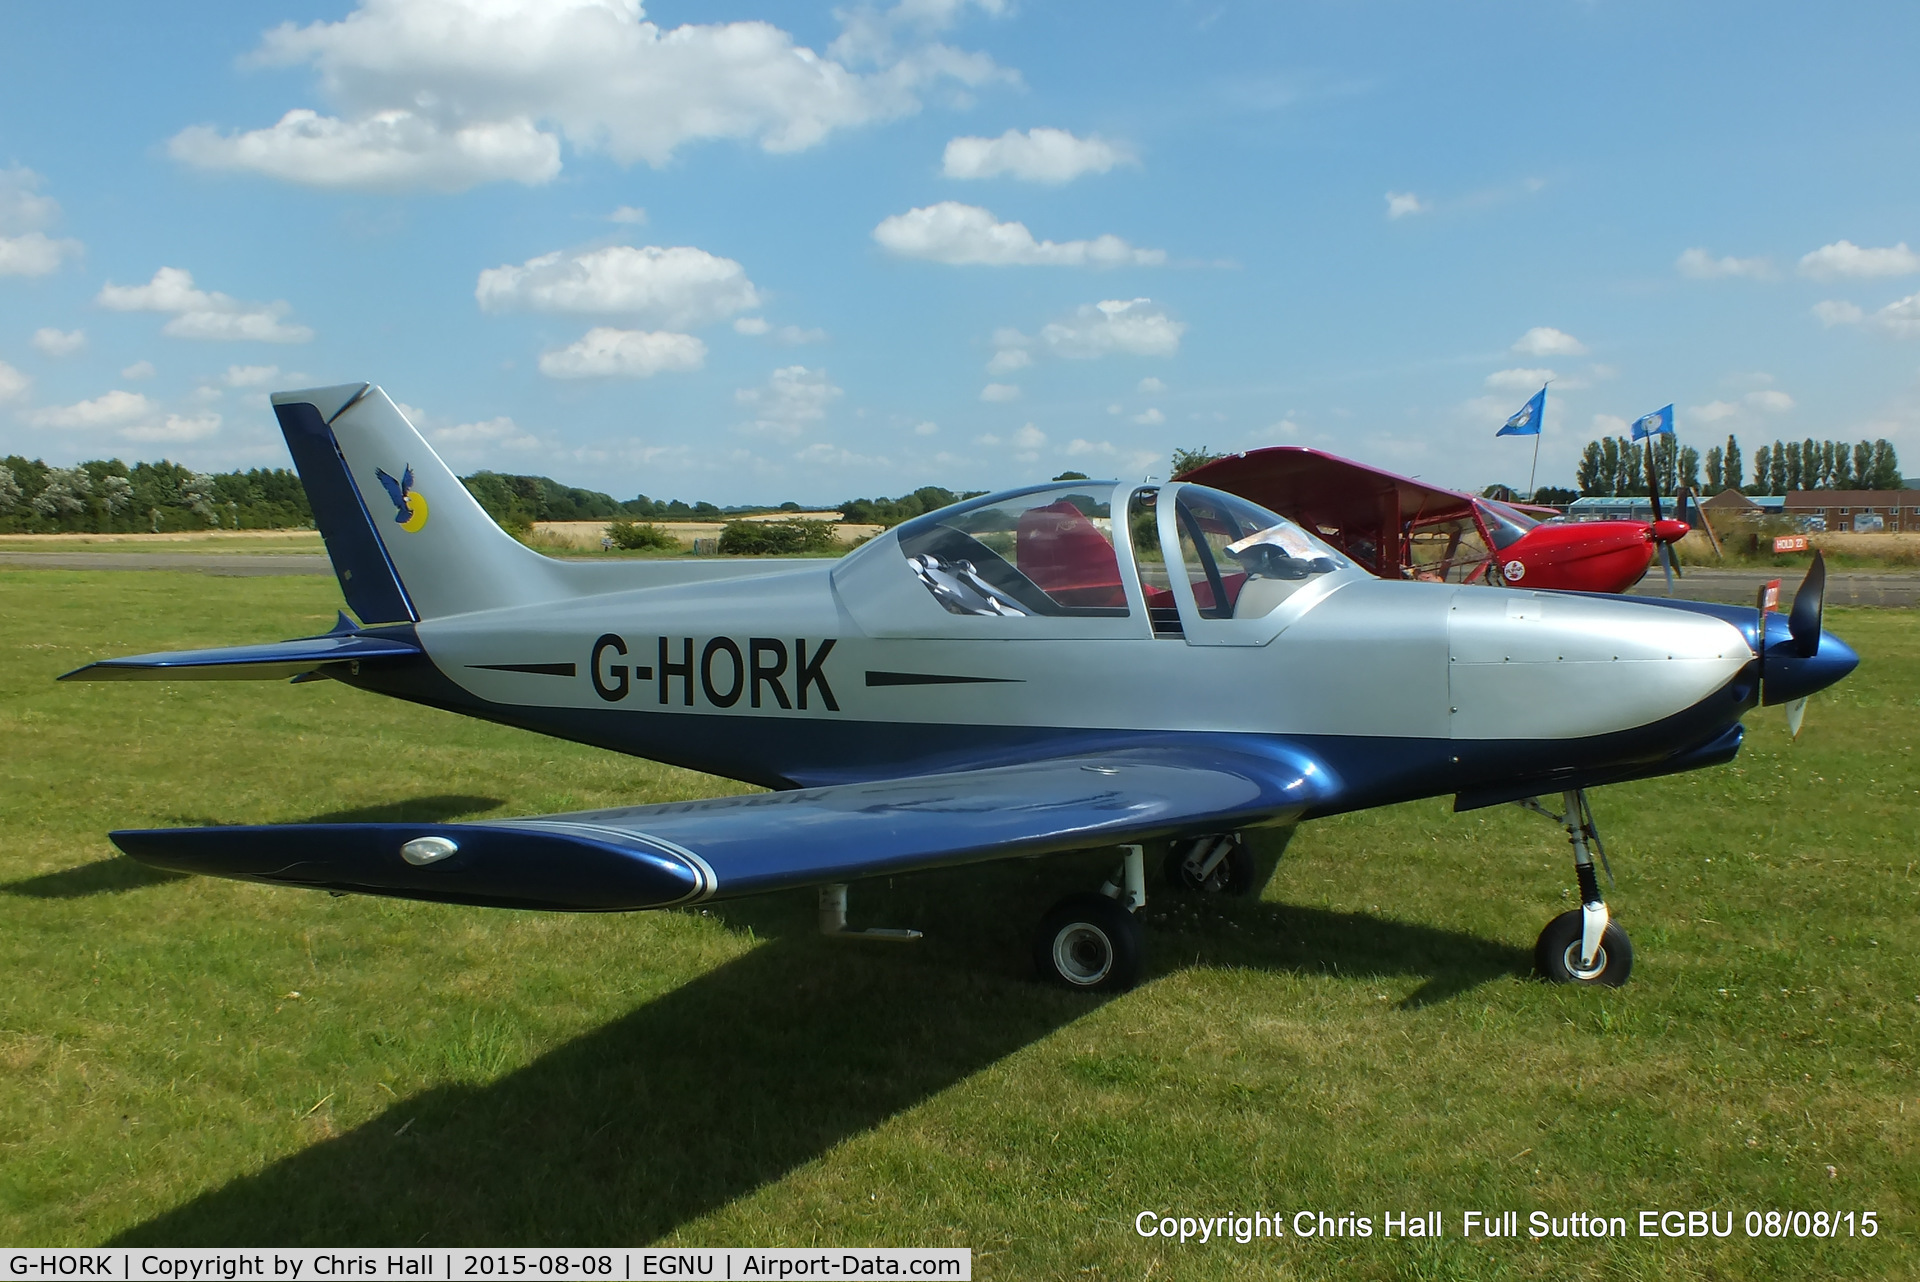 G-HORK, 2007 Alpi Aviation Pioneer 300 Hawk C/N PFA 330A-14741, at the Vale of York LAA strut flyin, Full Sutton